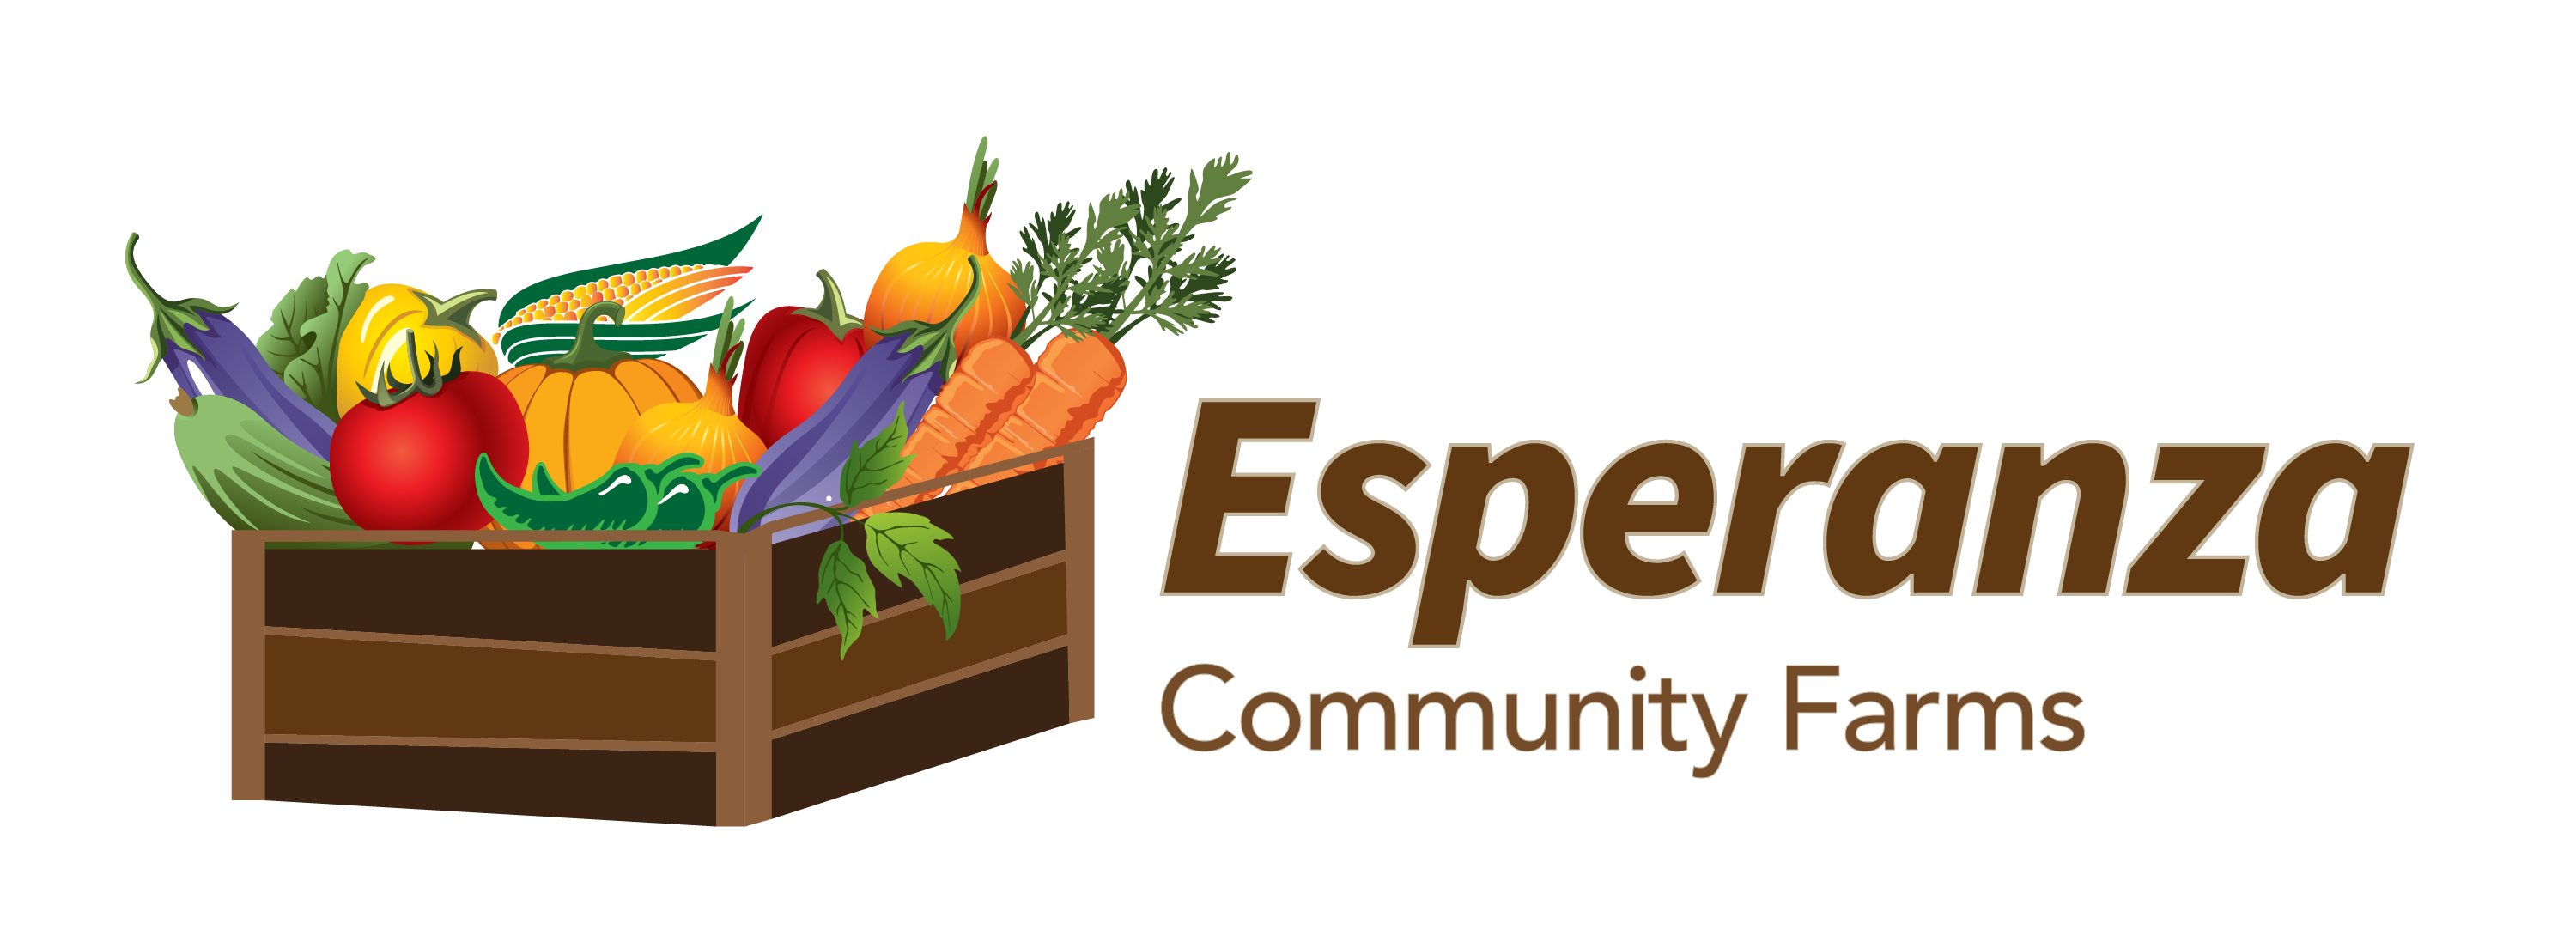 Esperanza Community Farms